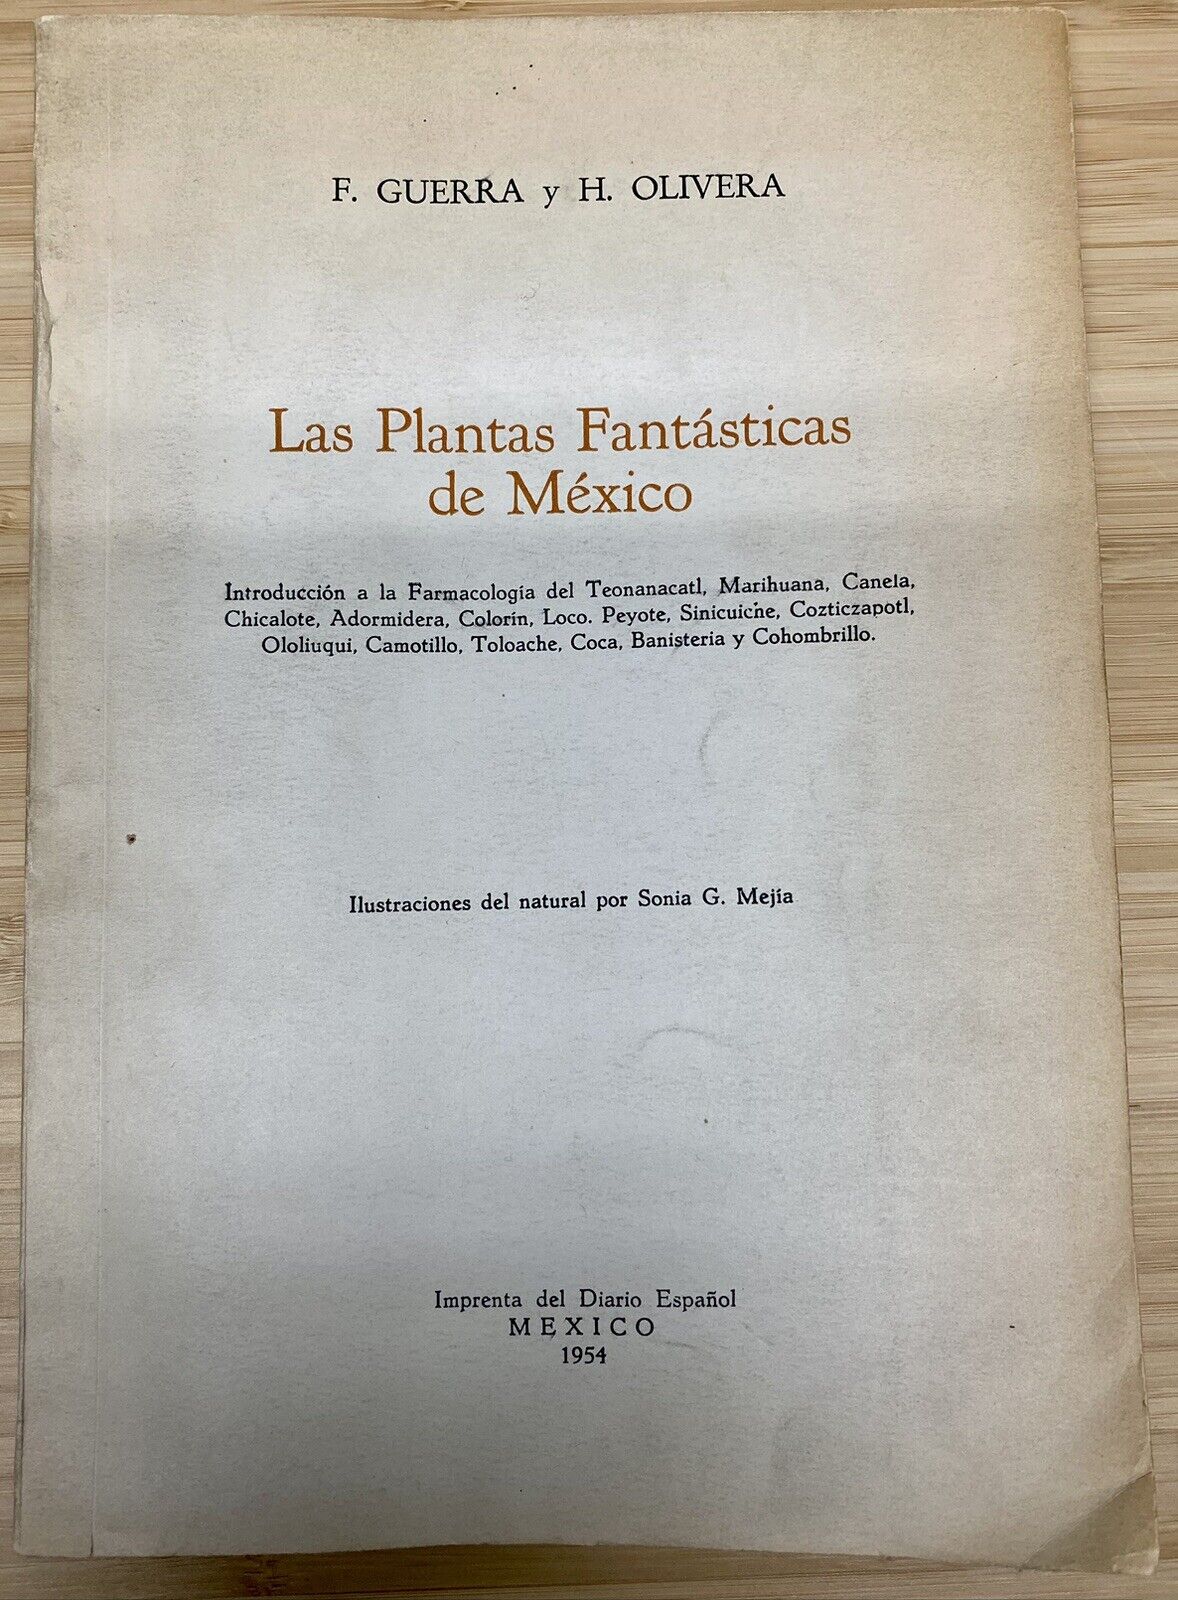 RARE Las Plantas Fantasticas de Mexico 1954 F. Guerra & H Olivera Hallucinogenic